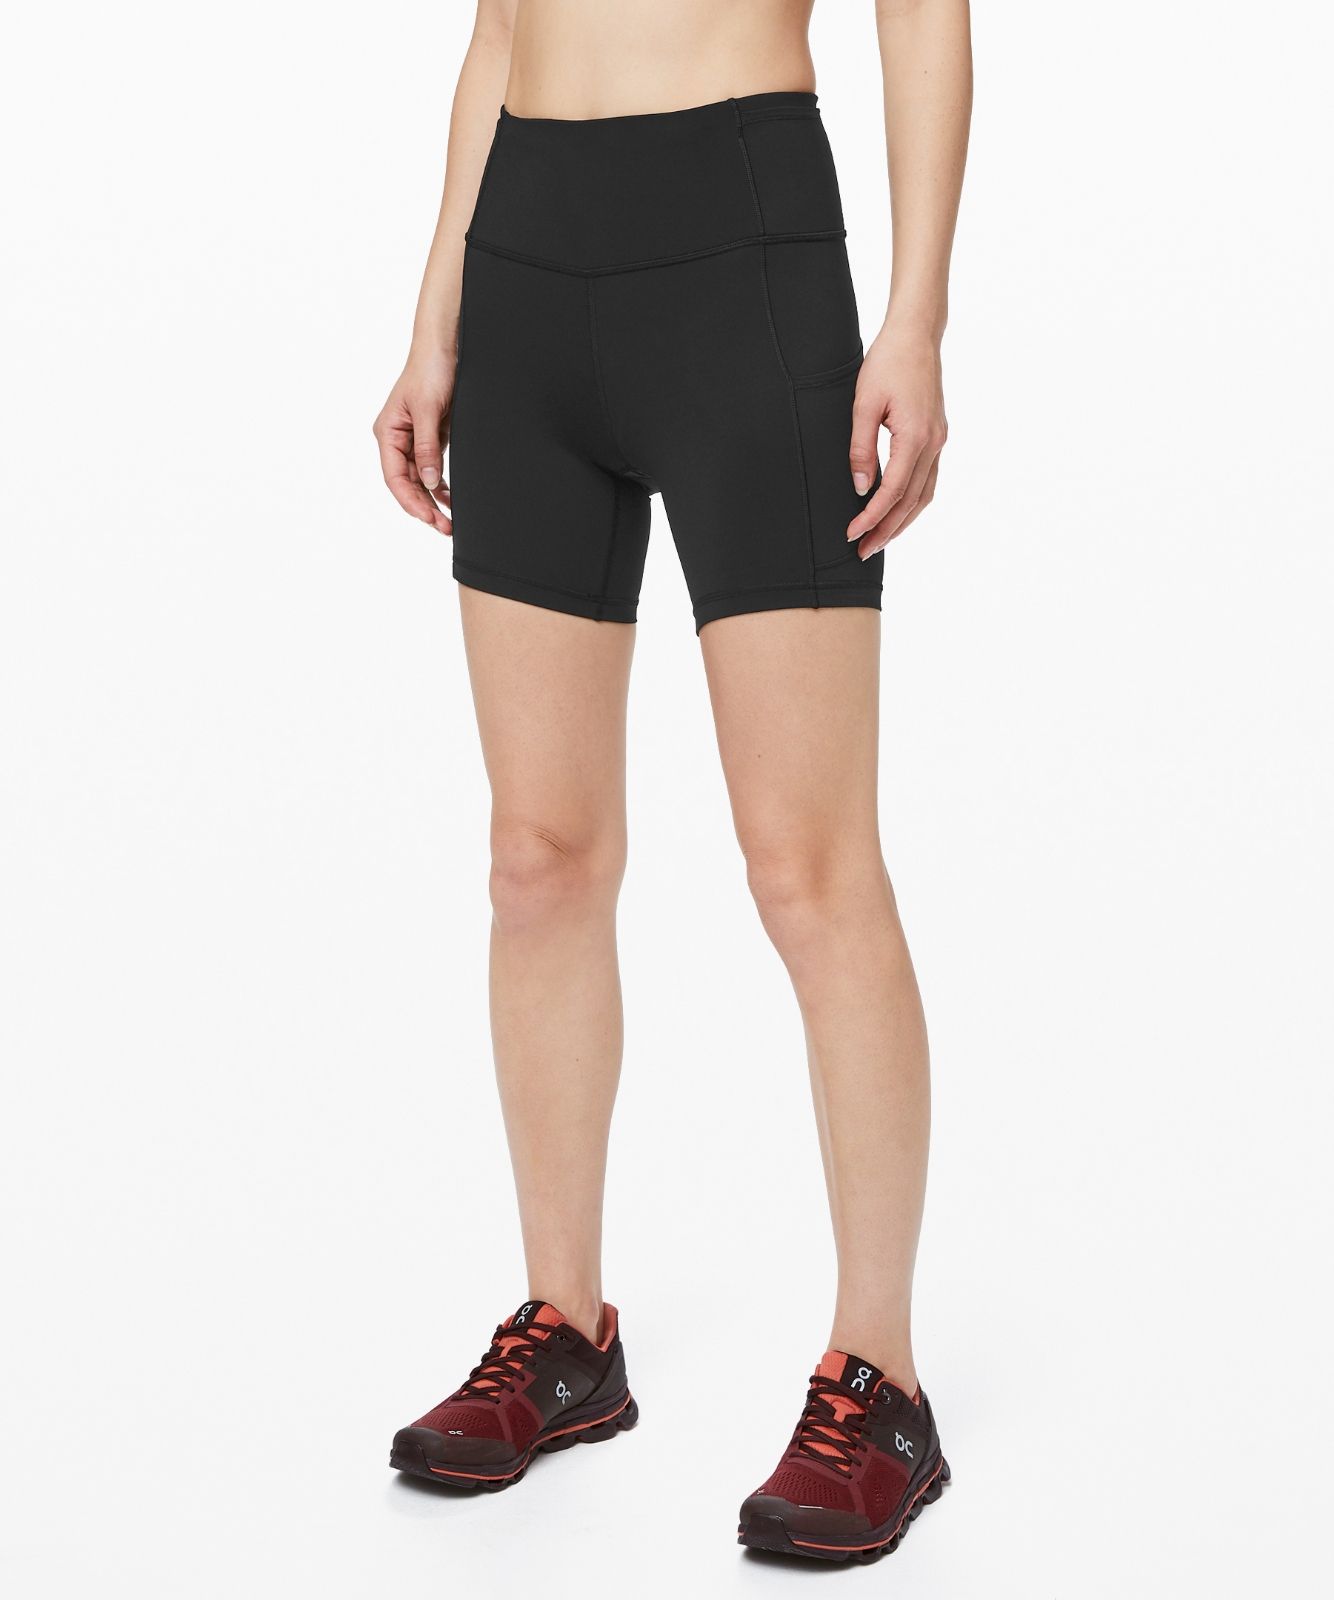 best lululemon shorts for running